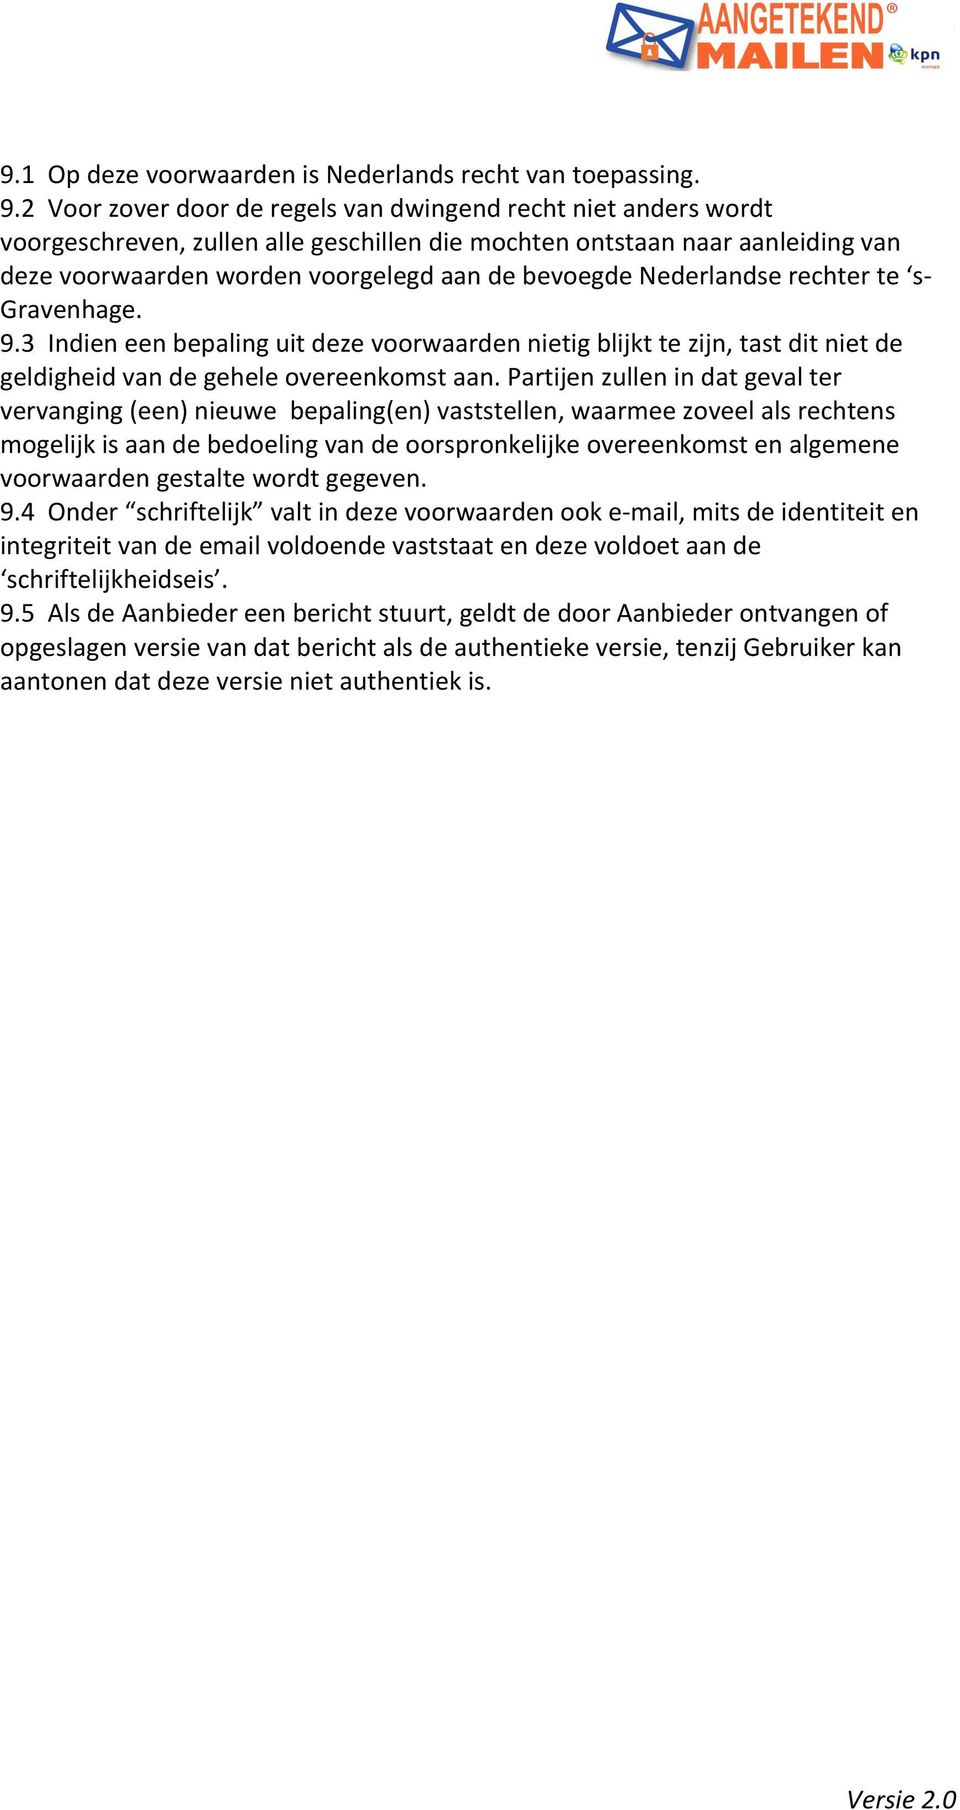 Nederlandse rechter te s- Gravenhage. 9.3 Indien een bepaling uit deze voorwaarden nietig blijkt te zijn, tast dit niet de geldigheid van de gehele overeenkomst aan.